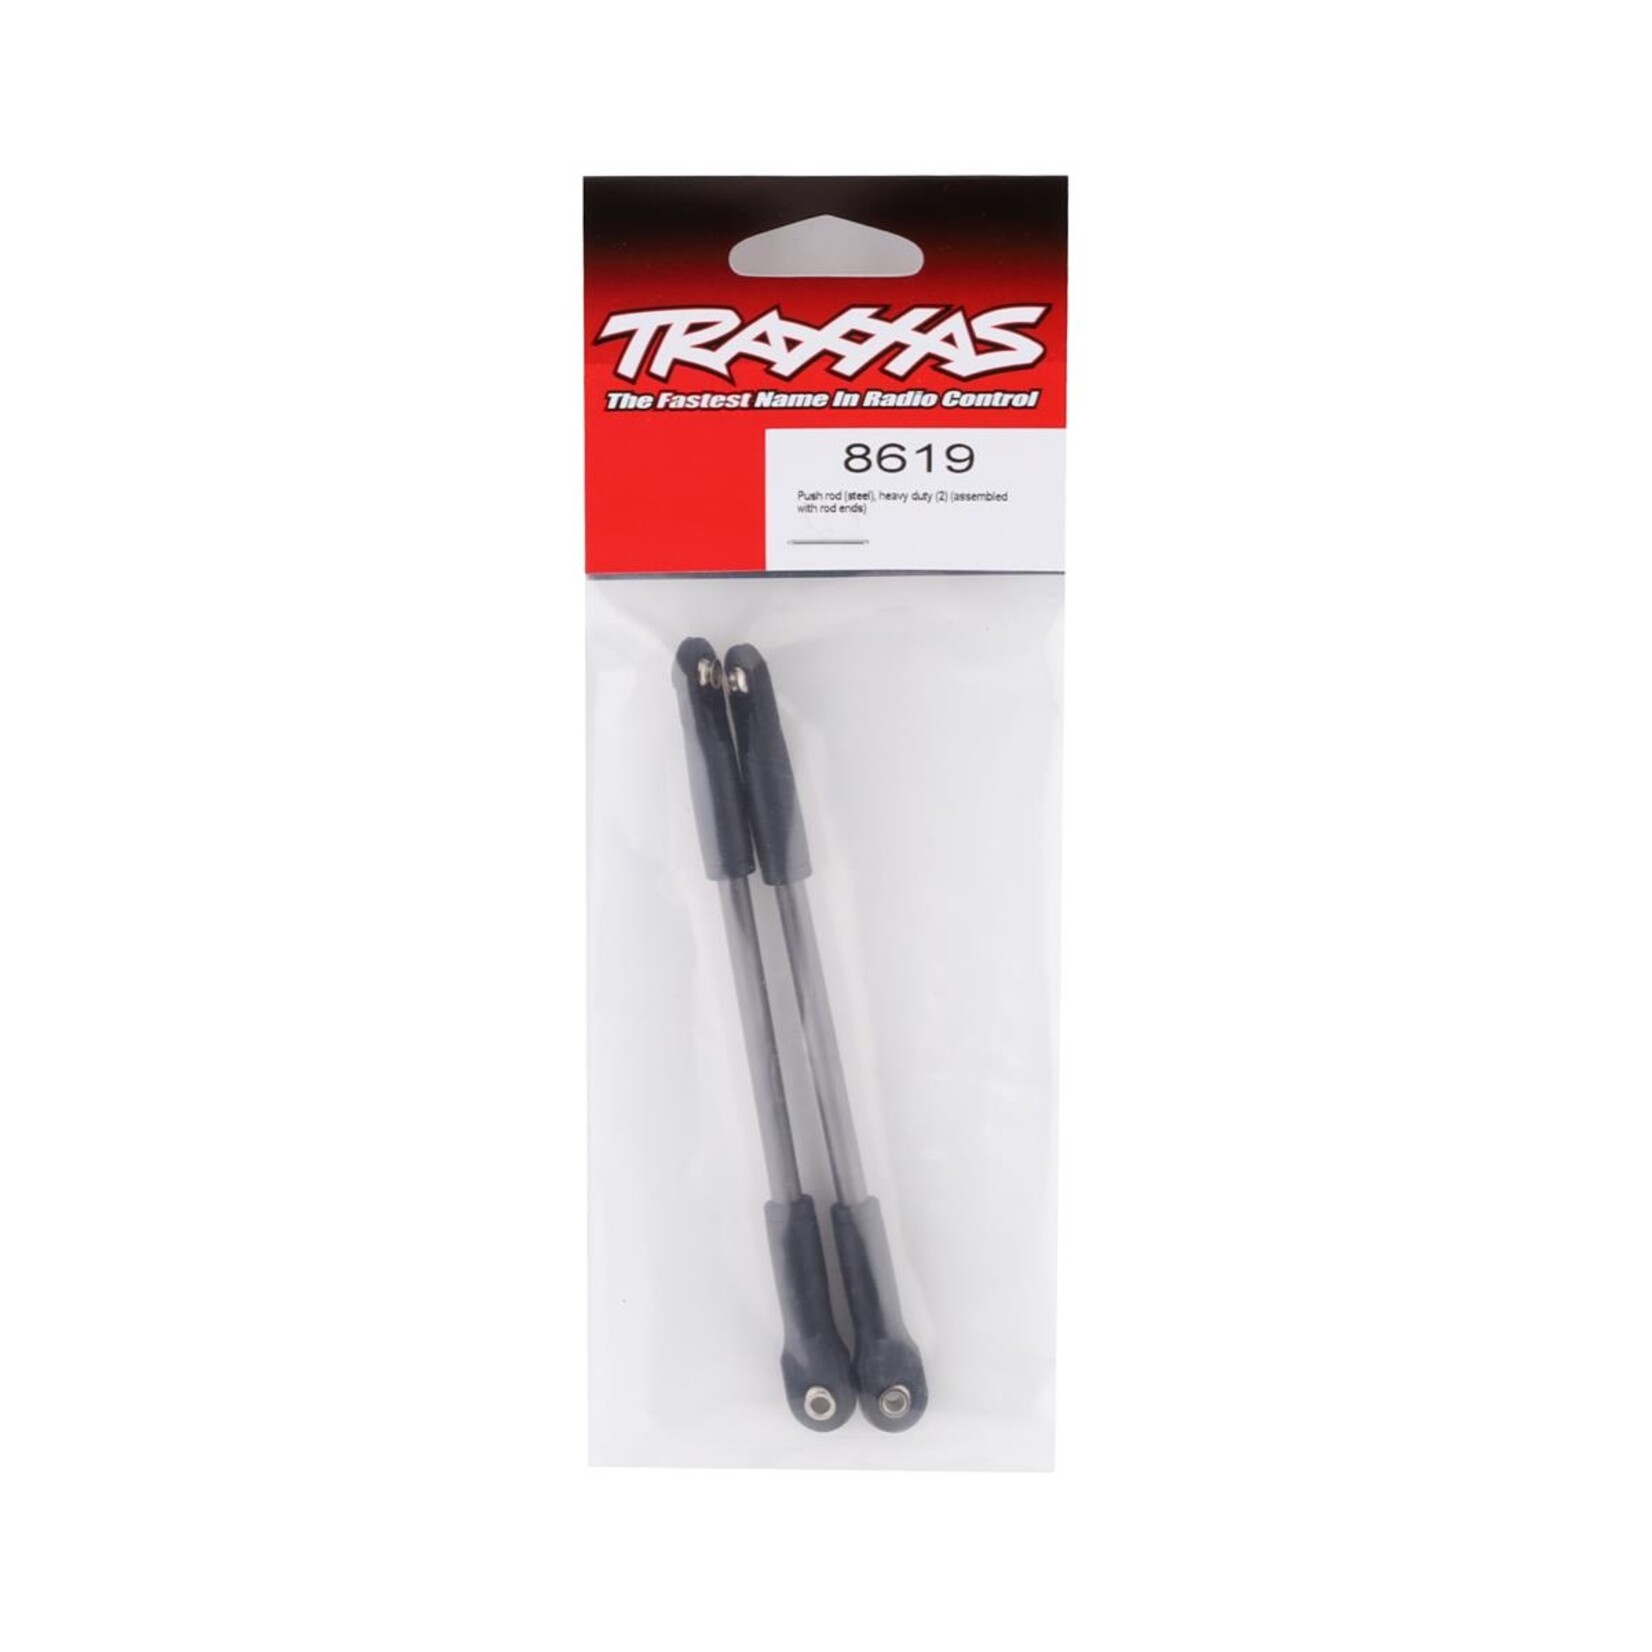 Traxxas Traxxas E-Revo 2.0 Steel Heavy-Duty Steering Link Push Rods (2) #8619